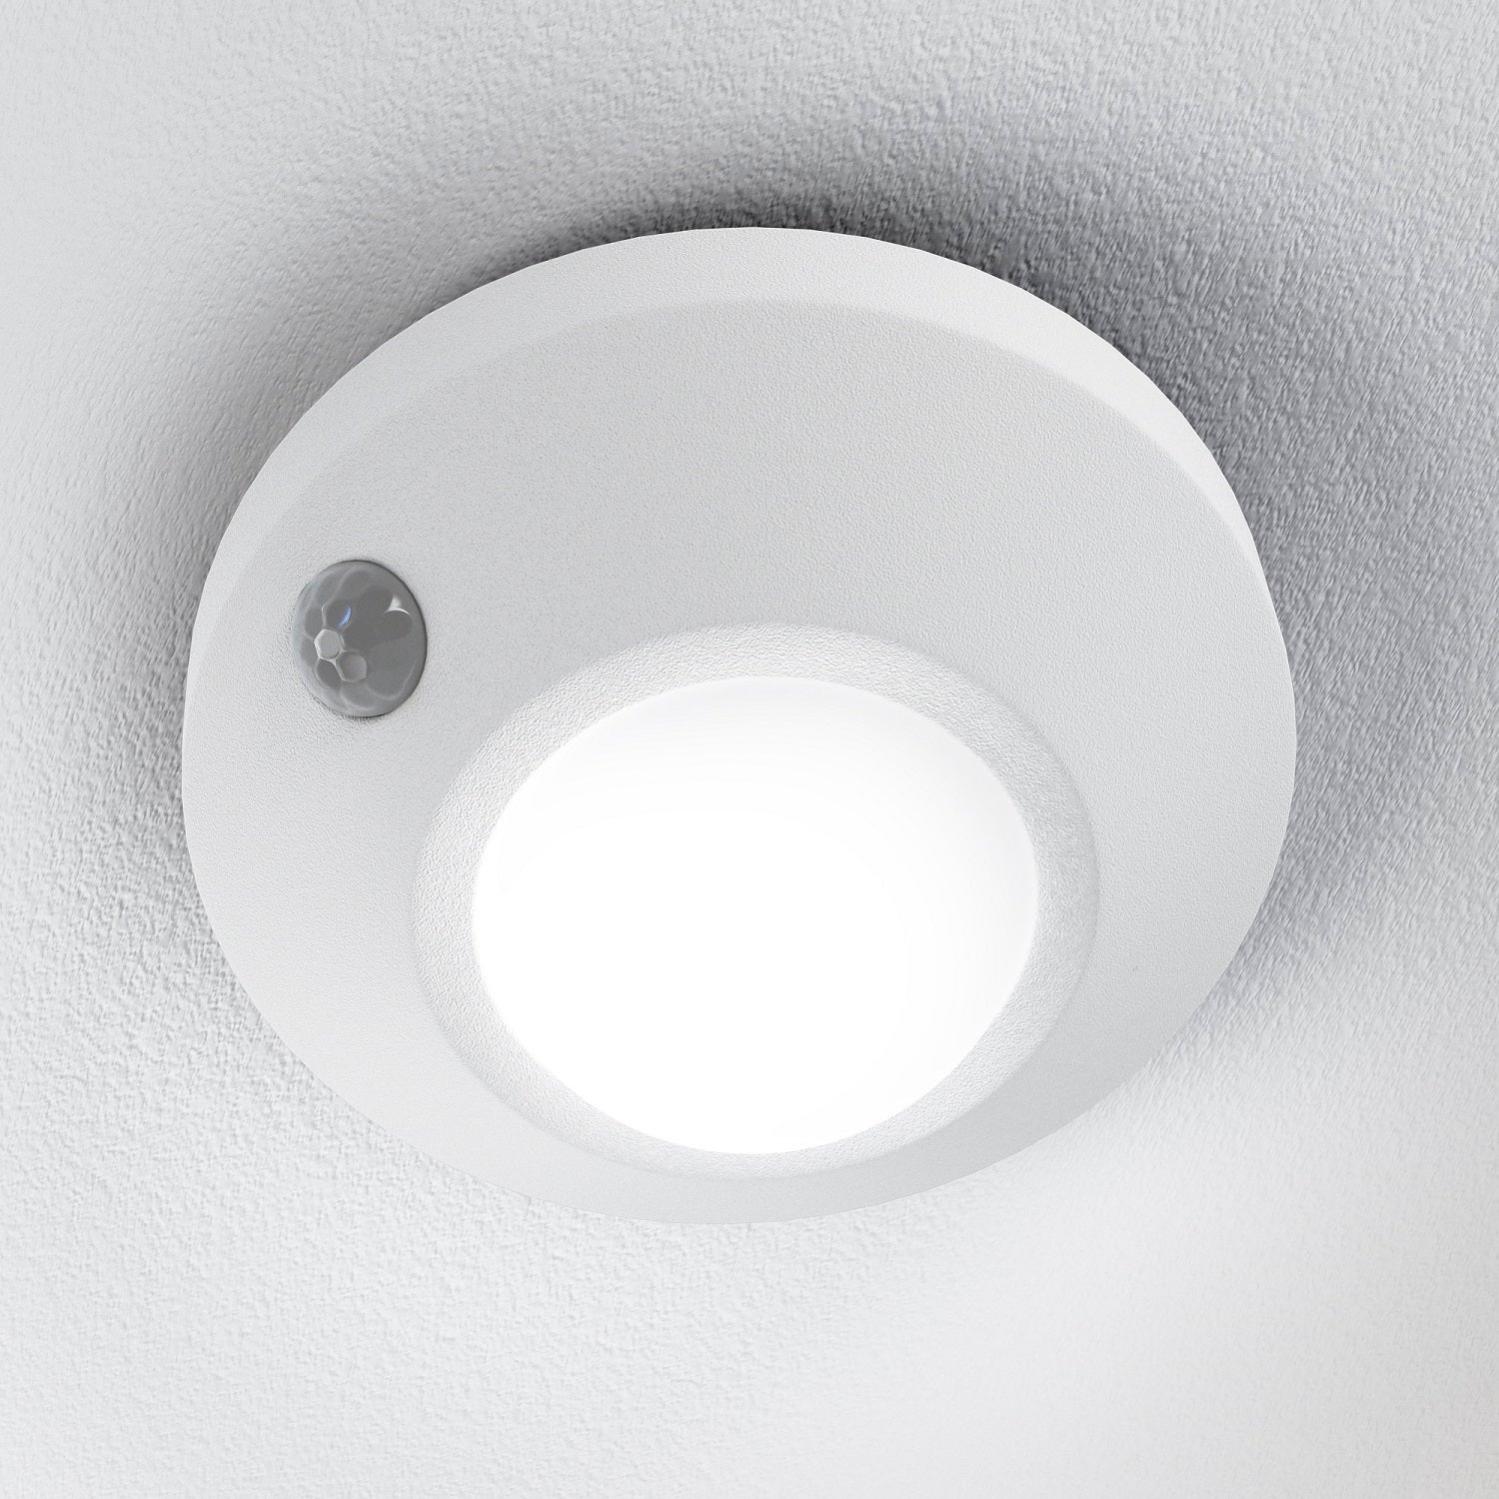 Spylux à LED blanc avec détecteur de présence intégré.